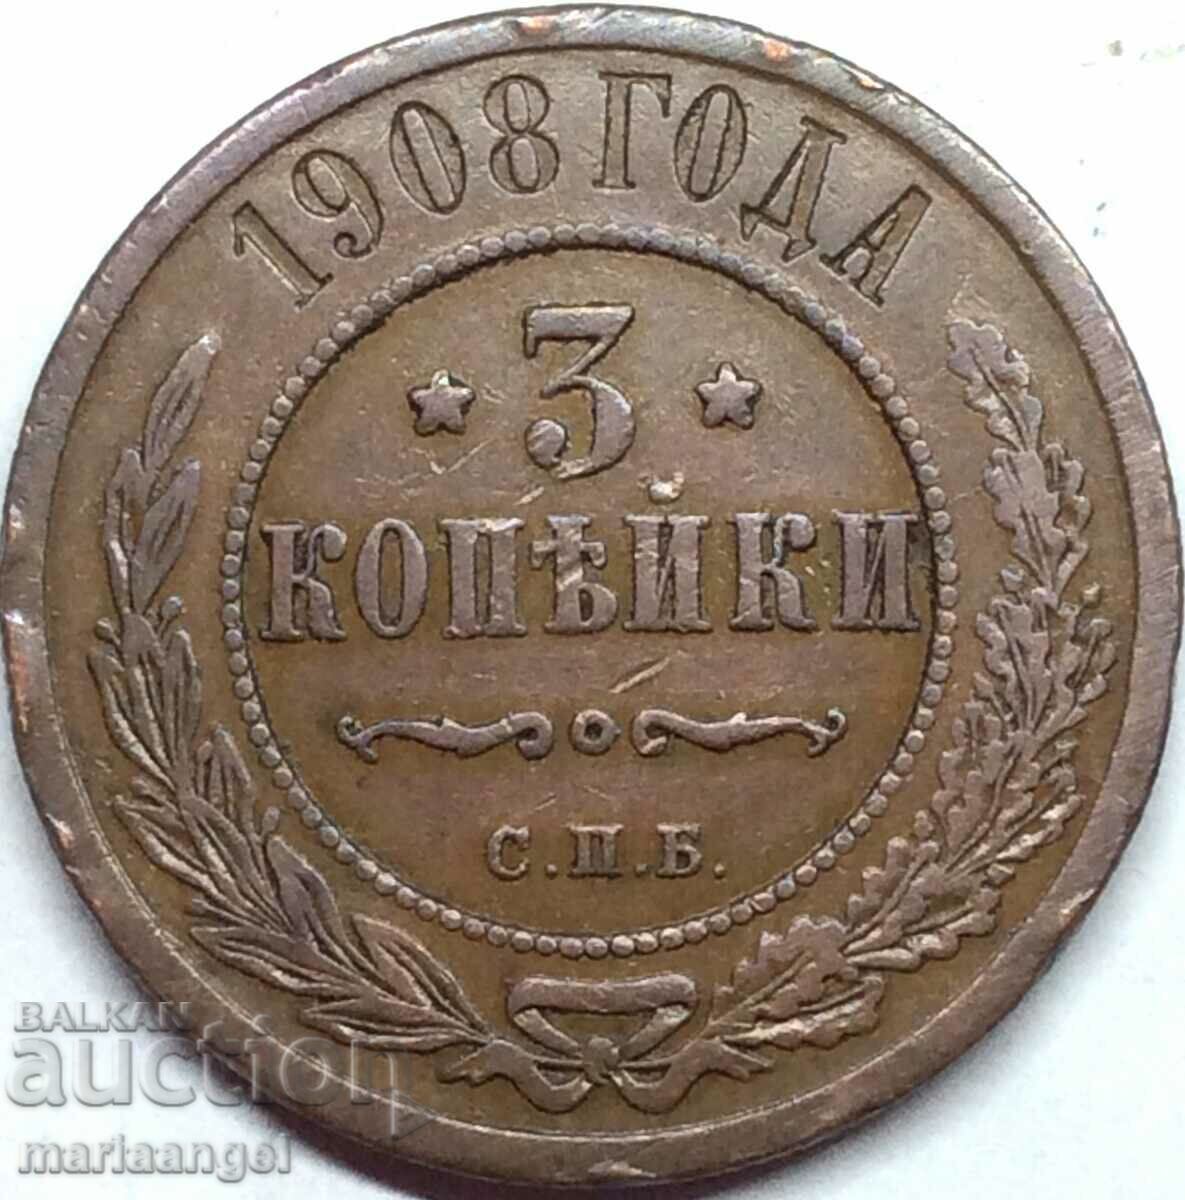 3 kopecks 1908 Russia 28mm copper